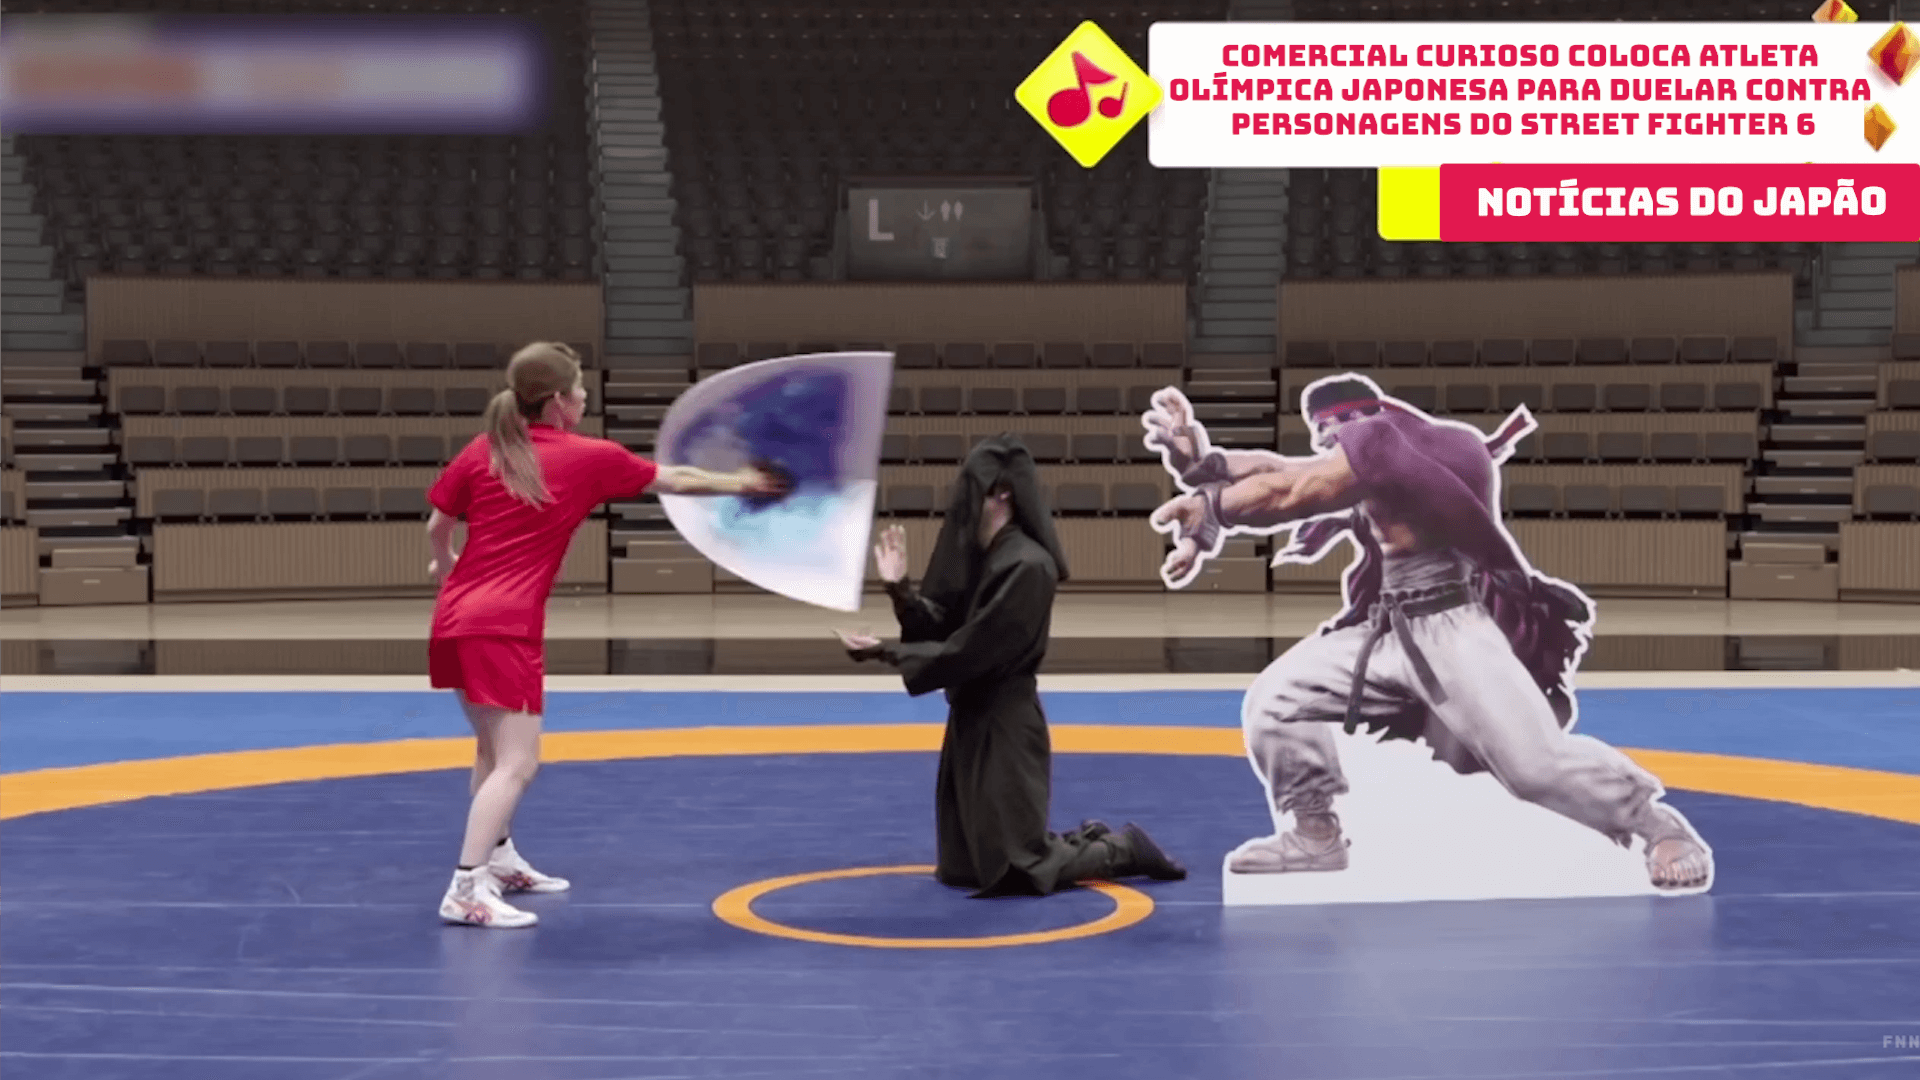 Comercial curioso coloca atleta olímpica japonesa para duelar contra personagens do Street Fighter 6 